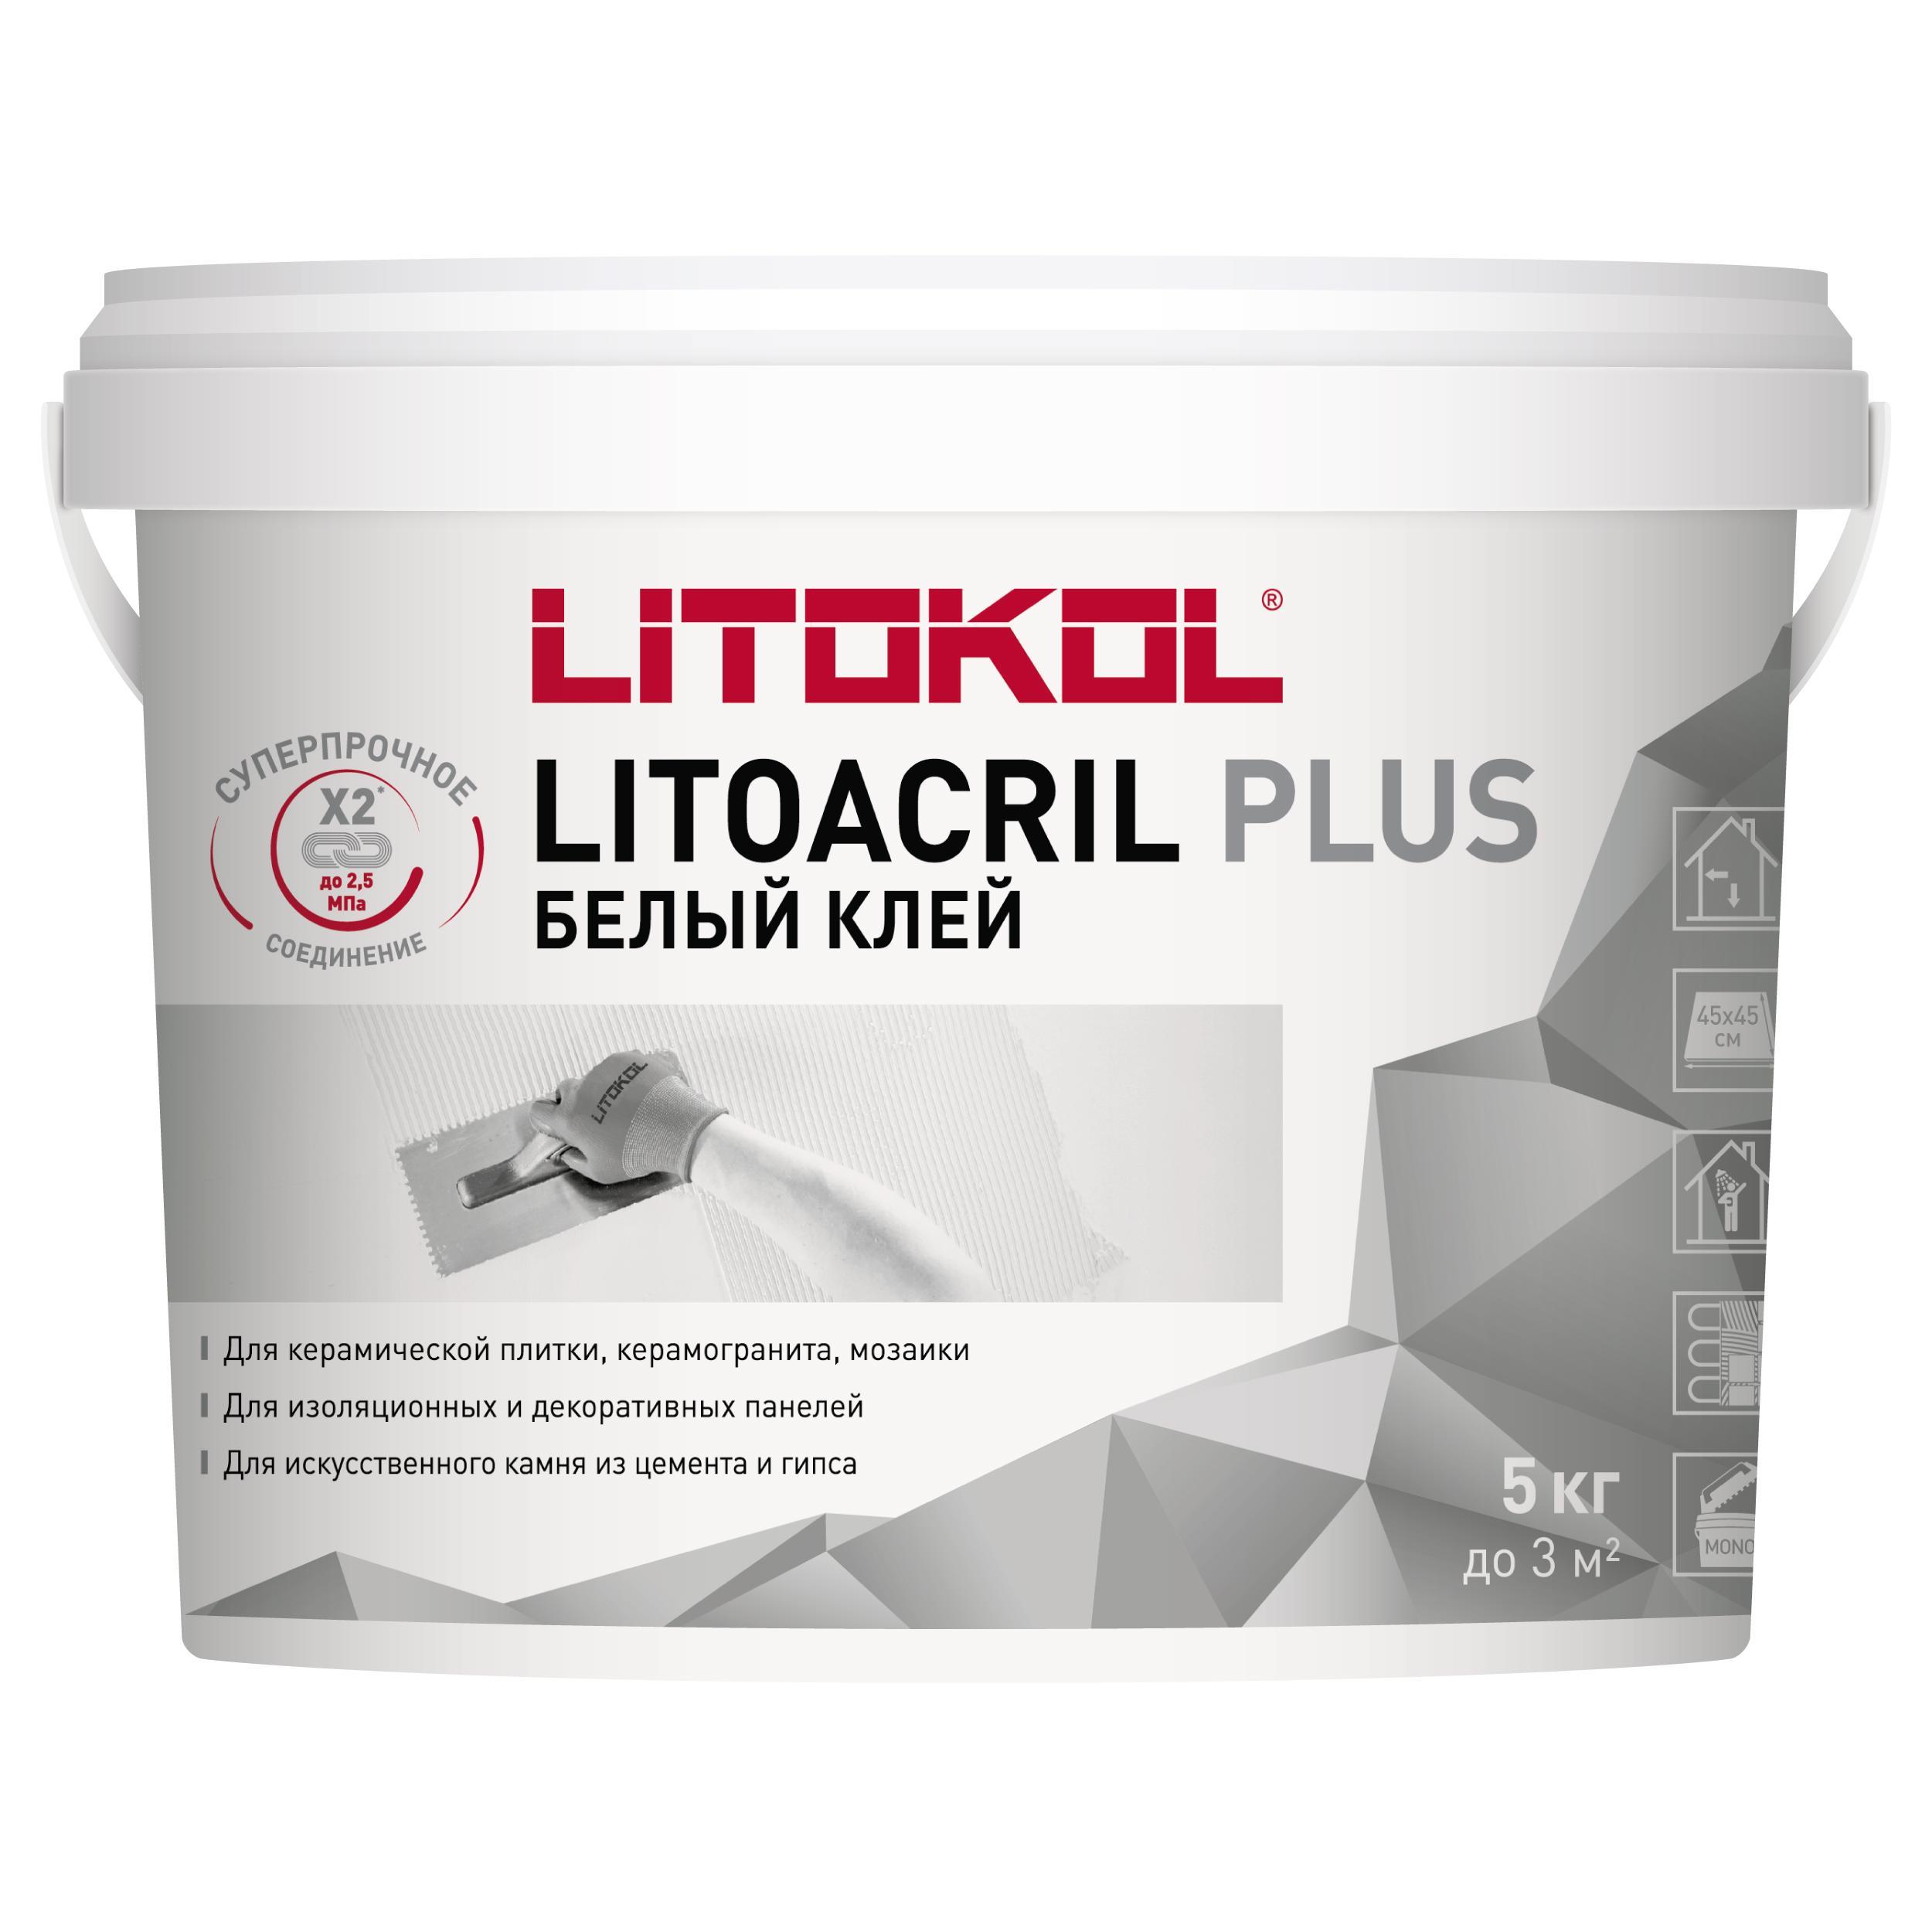 Купить клей литокол. Готовый клей для плитки Litokol Litoacril Plus 1 кг. Готовый клей для плитки Litokol Litoacril Fix 5 кг. Litokol PLUSFIX 25 кг. Литокол белый клей для плитки.